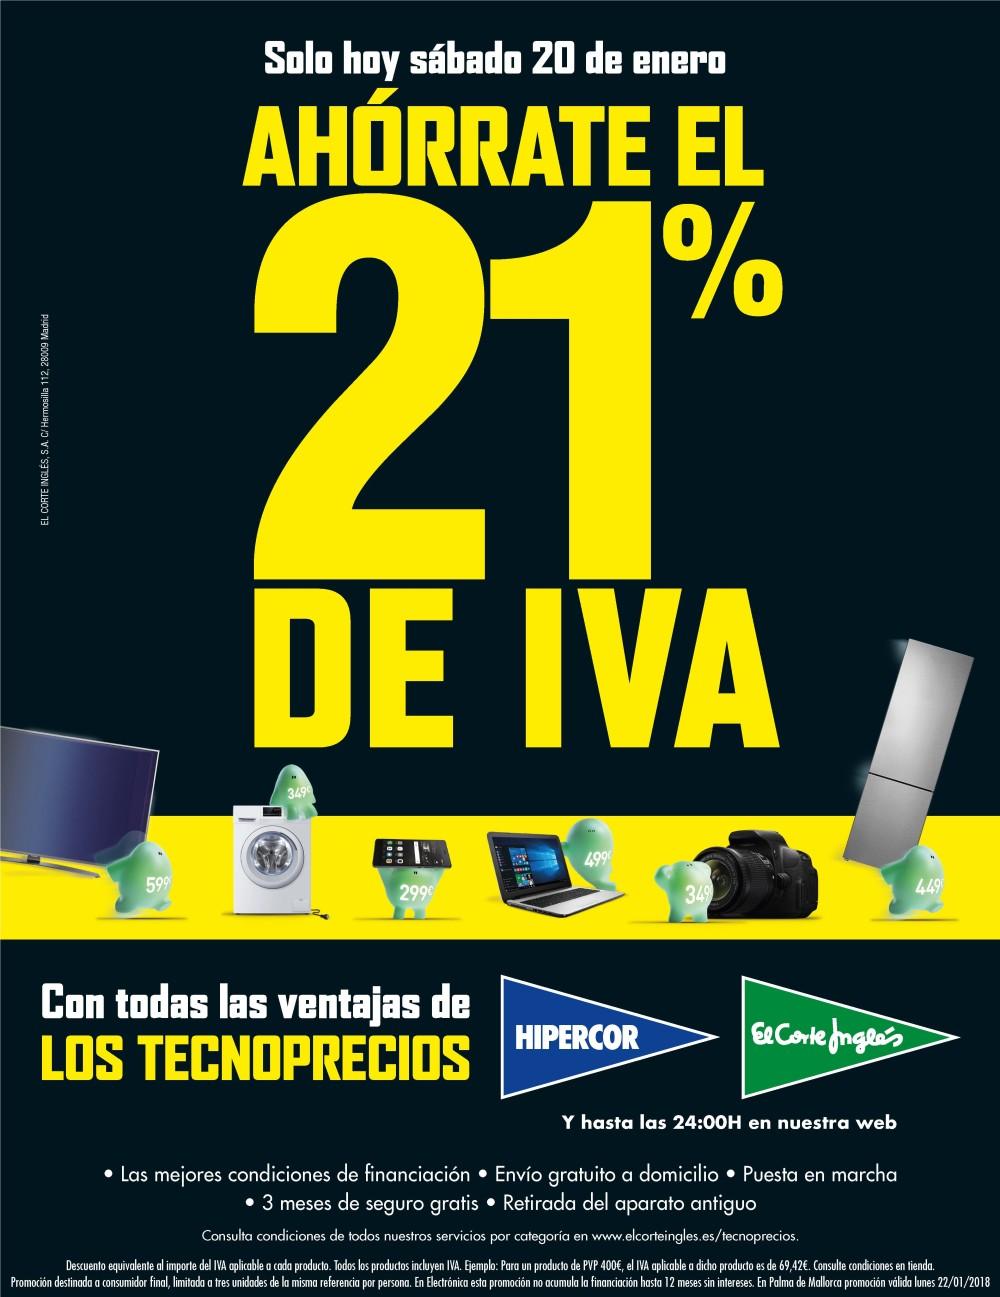 El Corte Hipercor lanzan mañana una campaña de ahorro 21% en electrónica y electrodomésticos Castellon Información